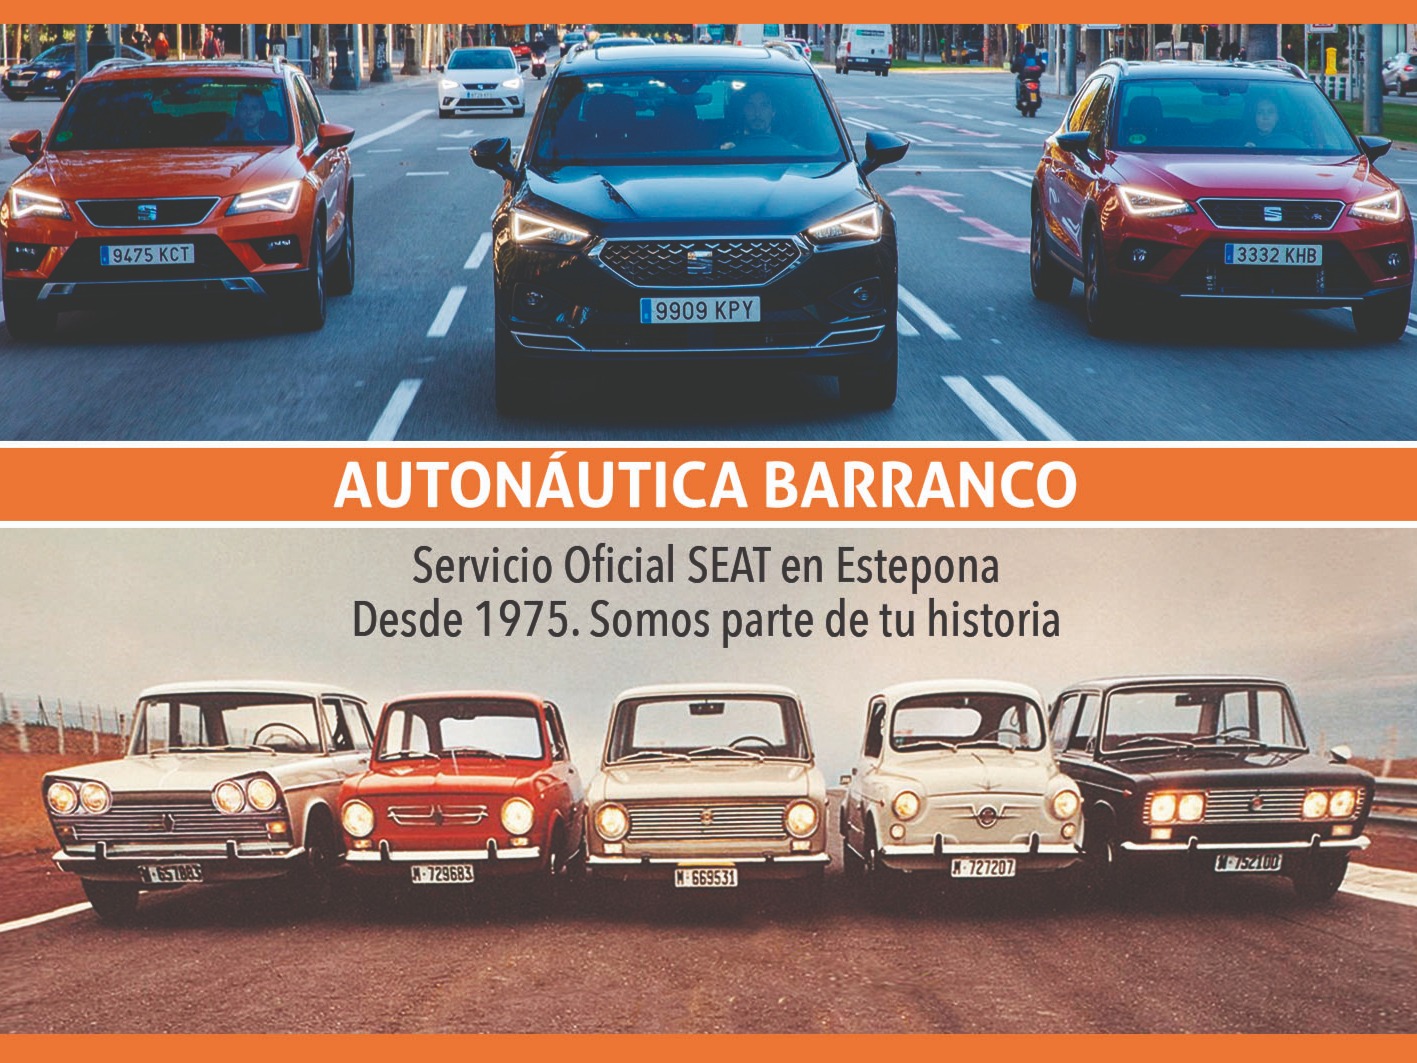 logo de Autonautica Barranco - SEAT Estepona